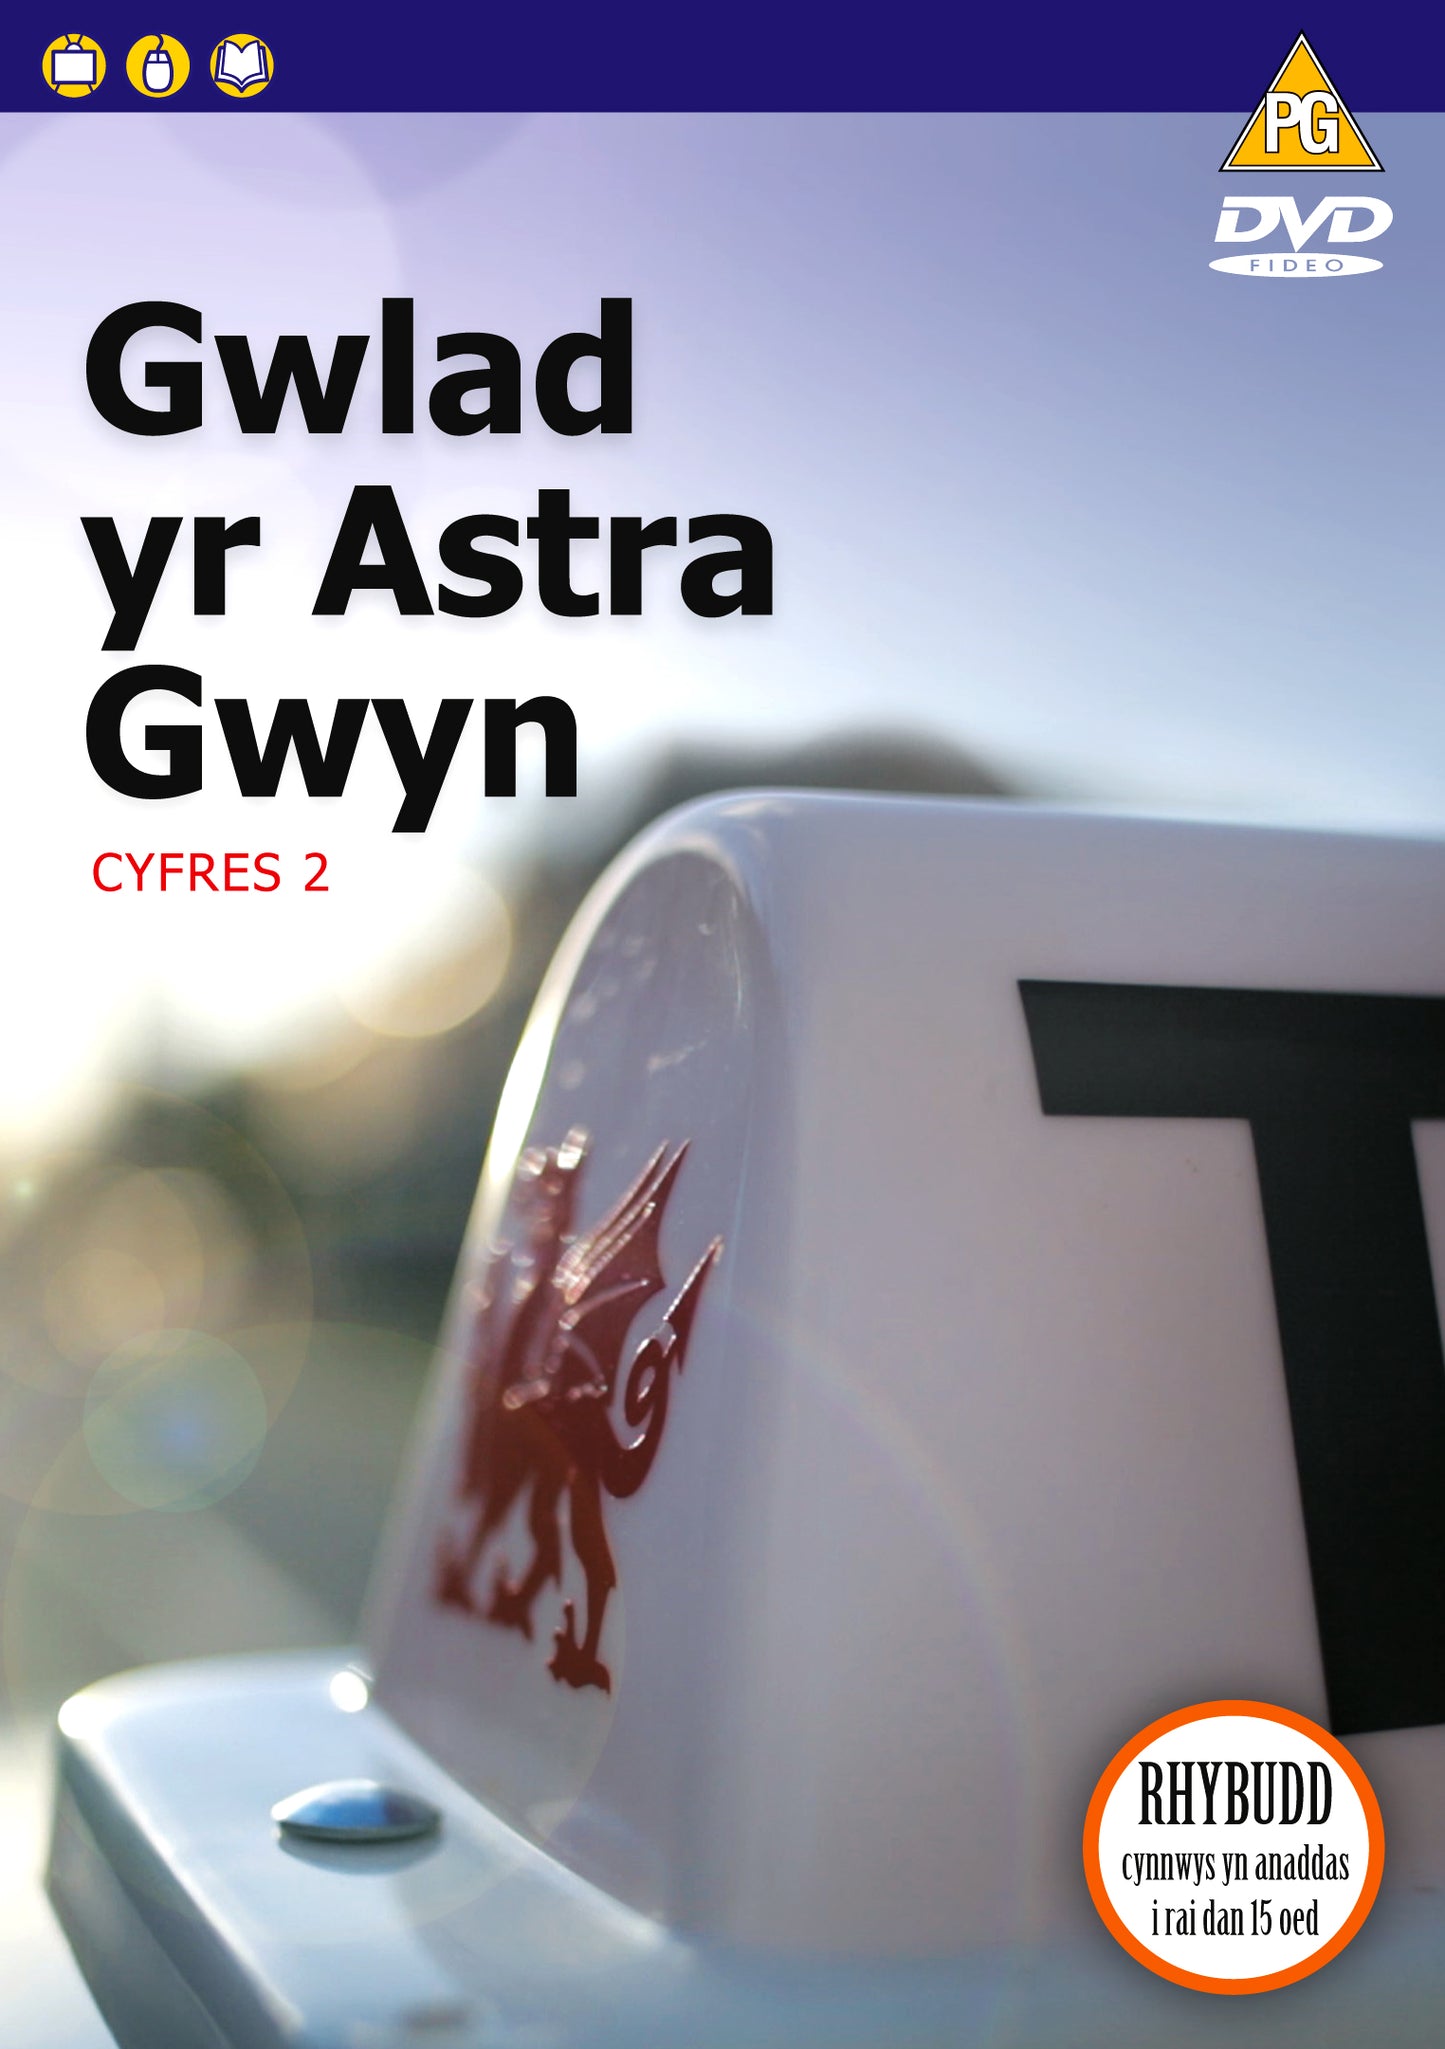 Gwlad yr Astra Gwyn (Cyfres 2)